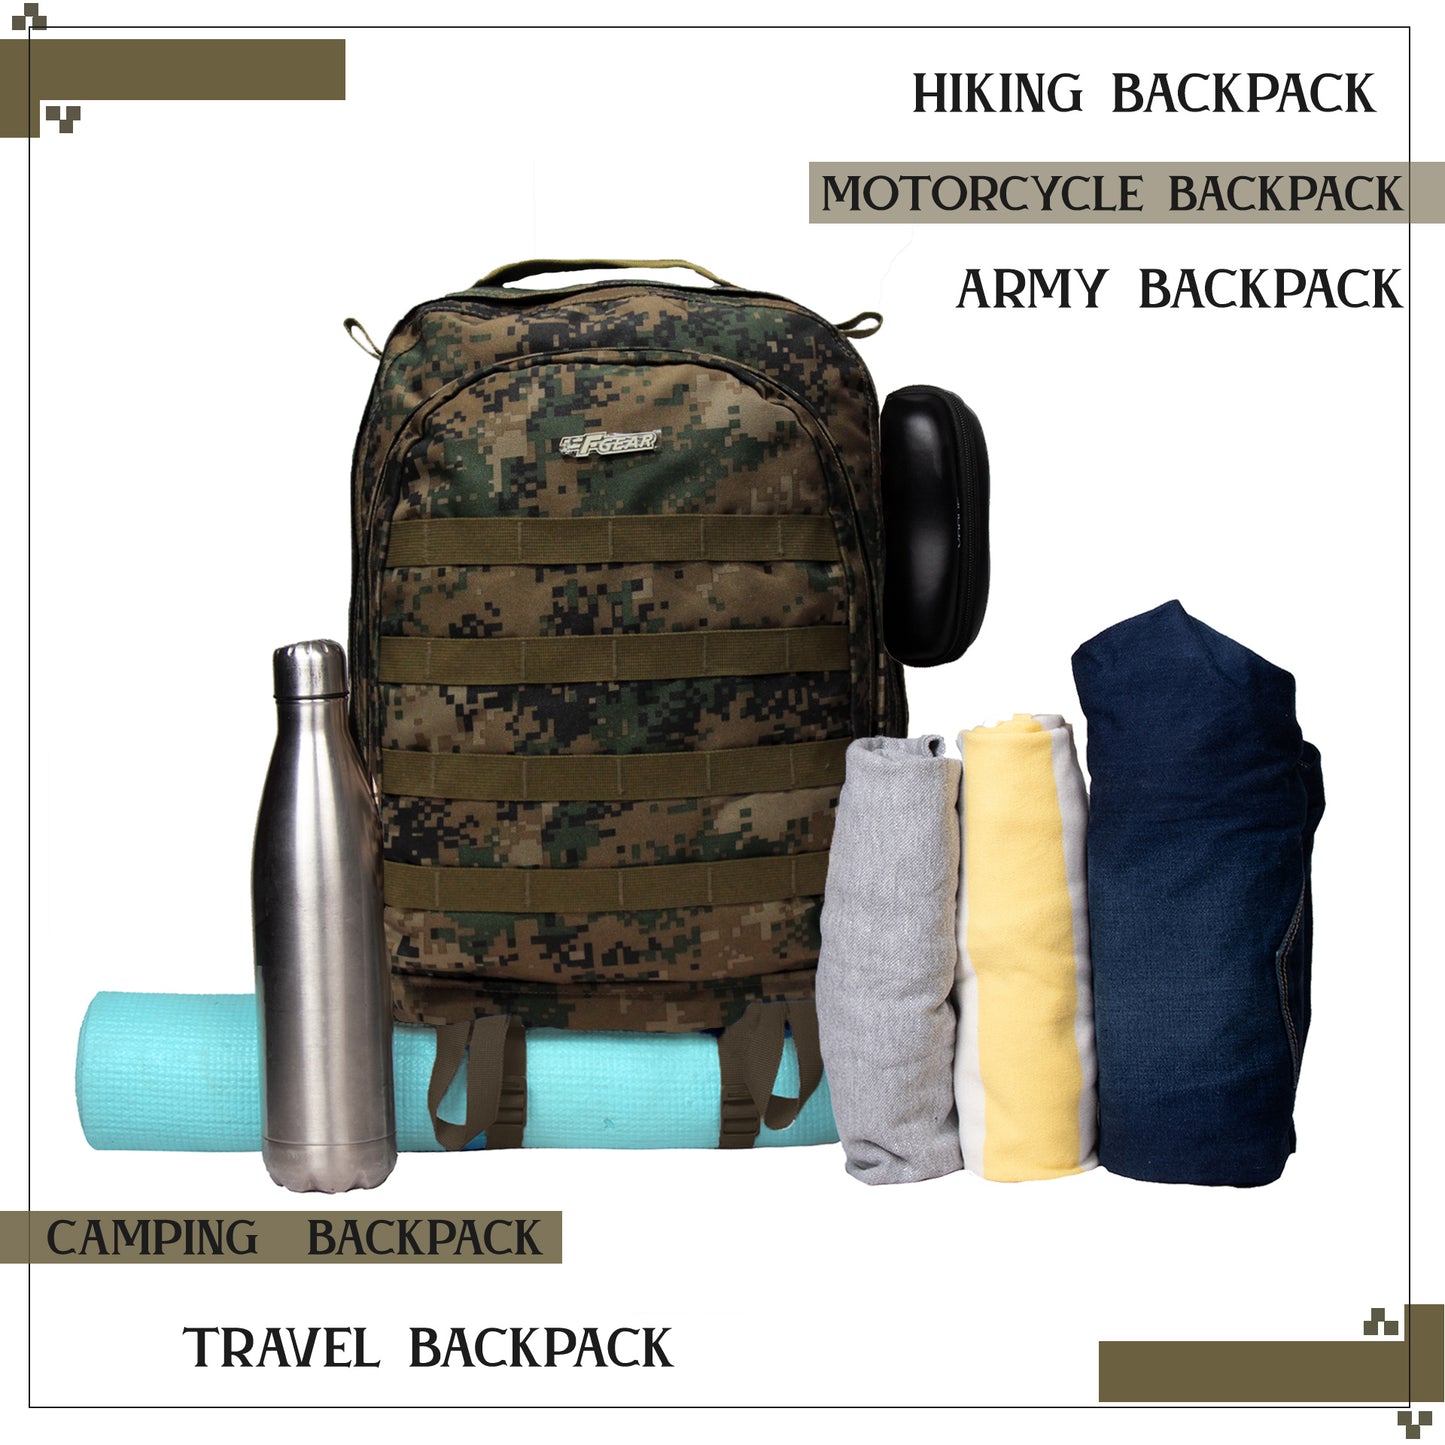 Tricoder 32L Marpat WL Digital Camo Backpack